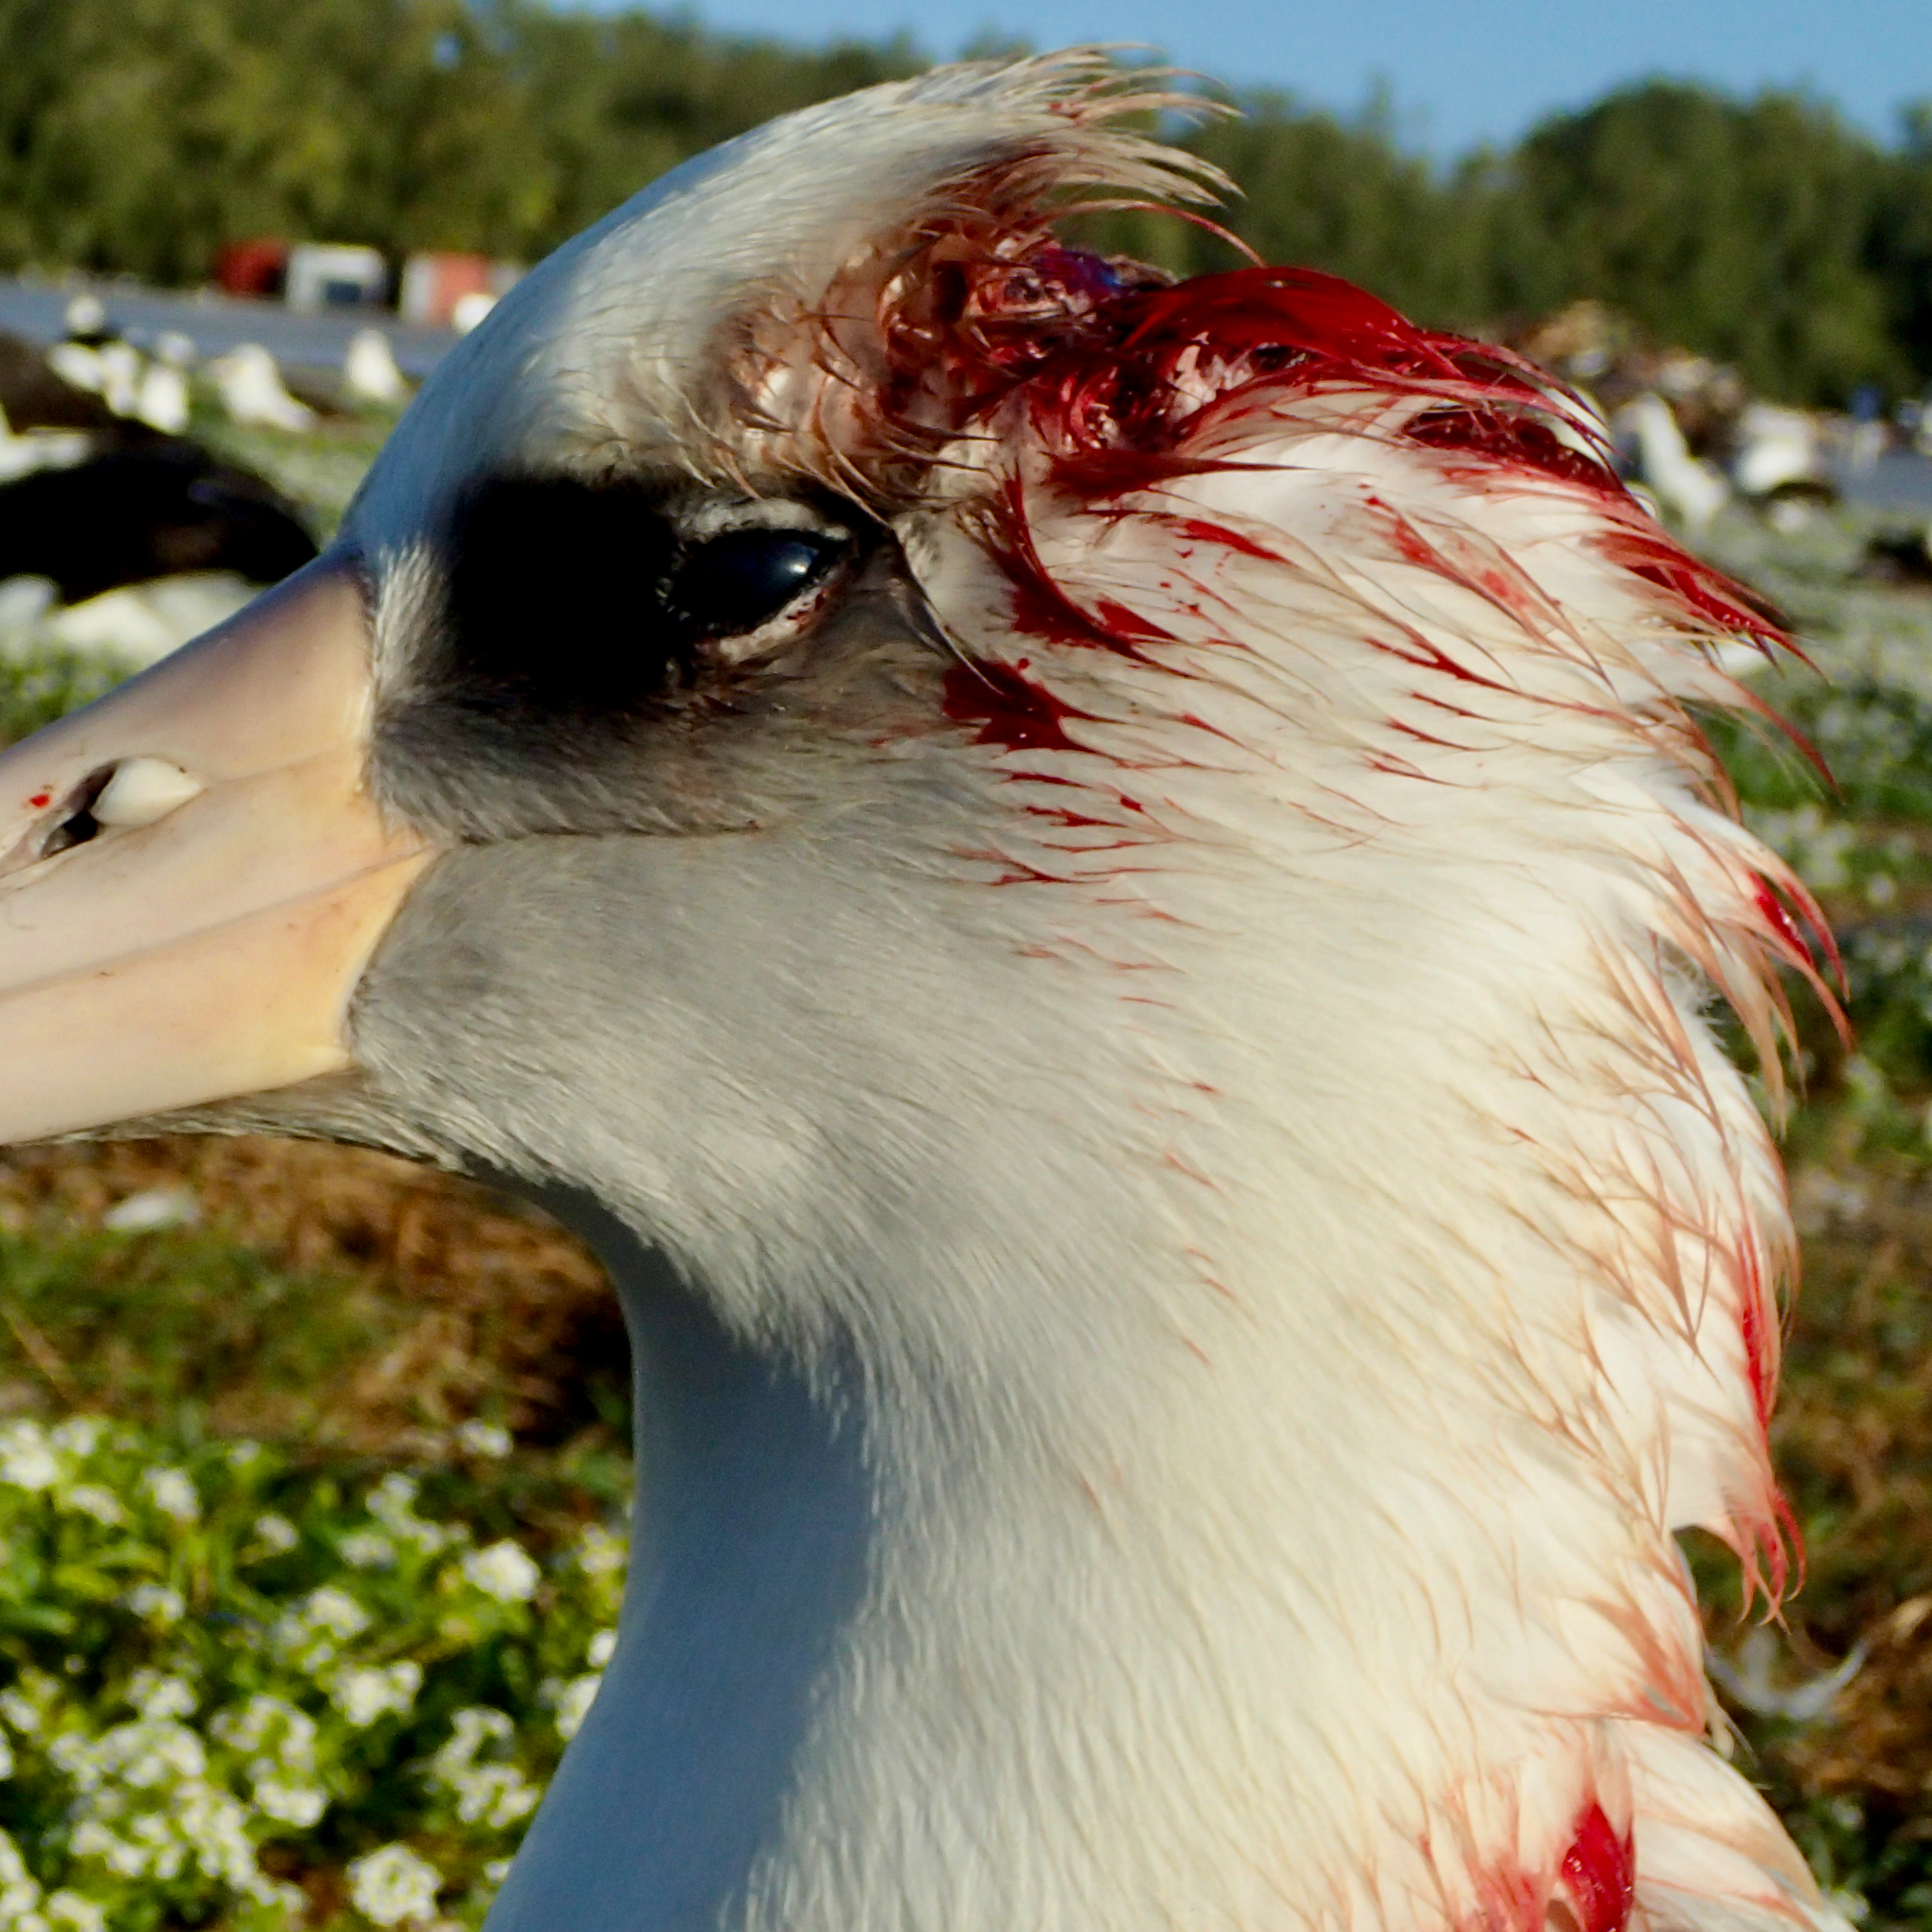 Camundongos assassinos atacam albatrozes em atol no Pacífico, e cientistas lutam para dar fim ao problema